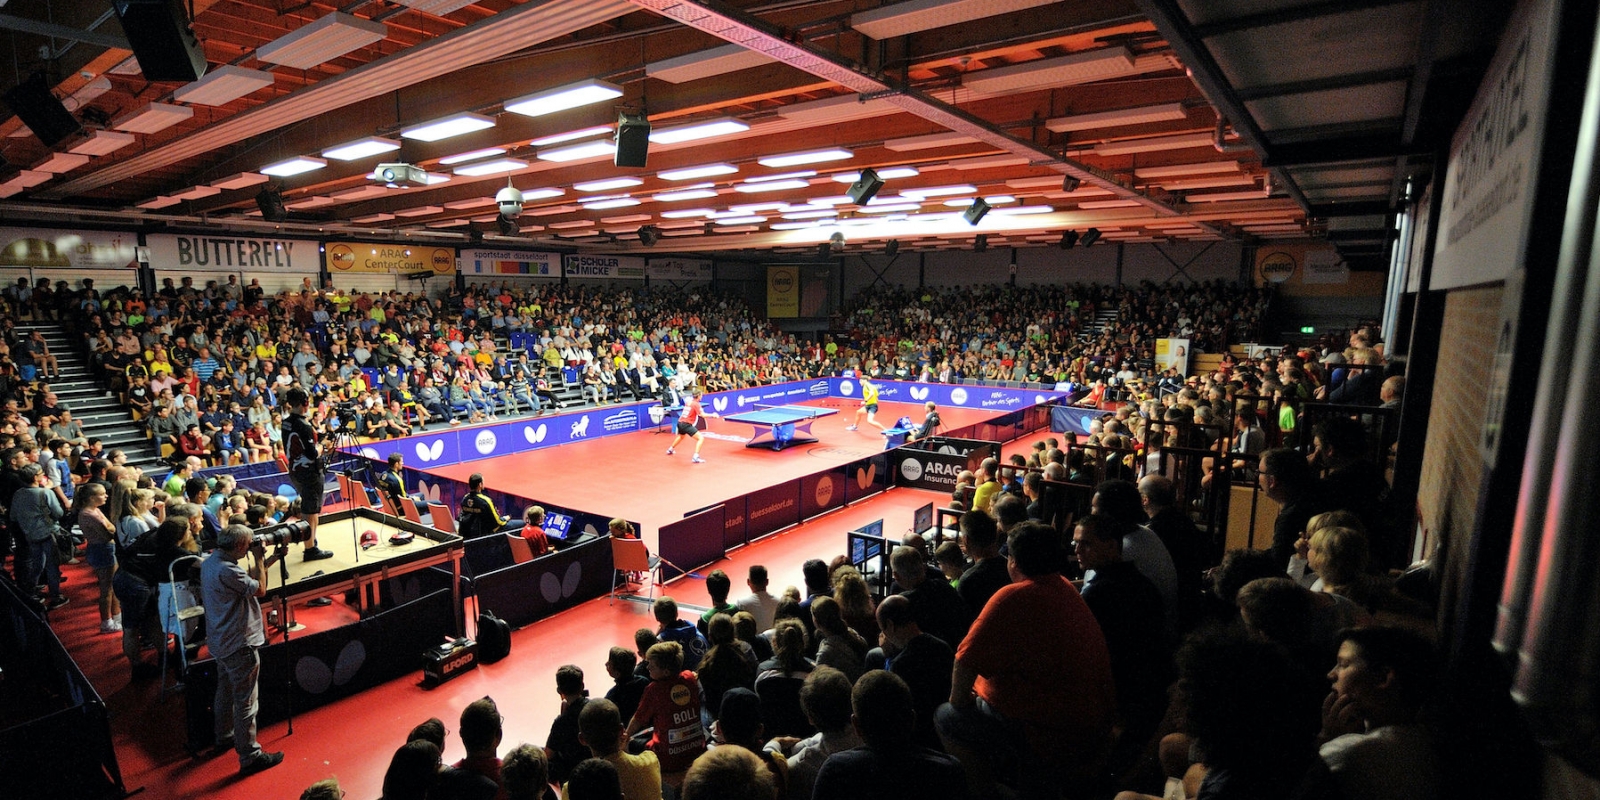 Tischtennis Halle mit vollen Zuschauerrängen. In der Mitte des Feldes spielen zwei Tischtennisspieler an einer Tischtennisplatte.